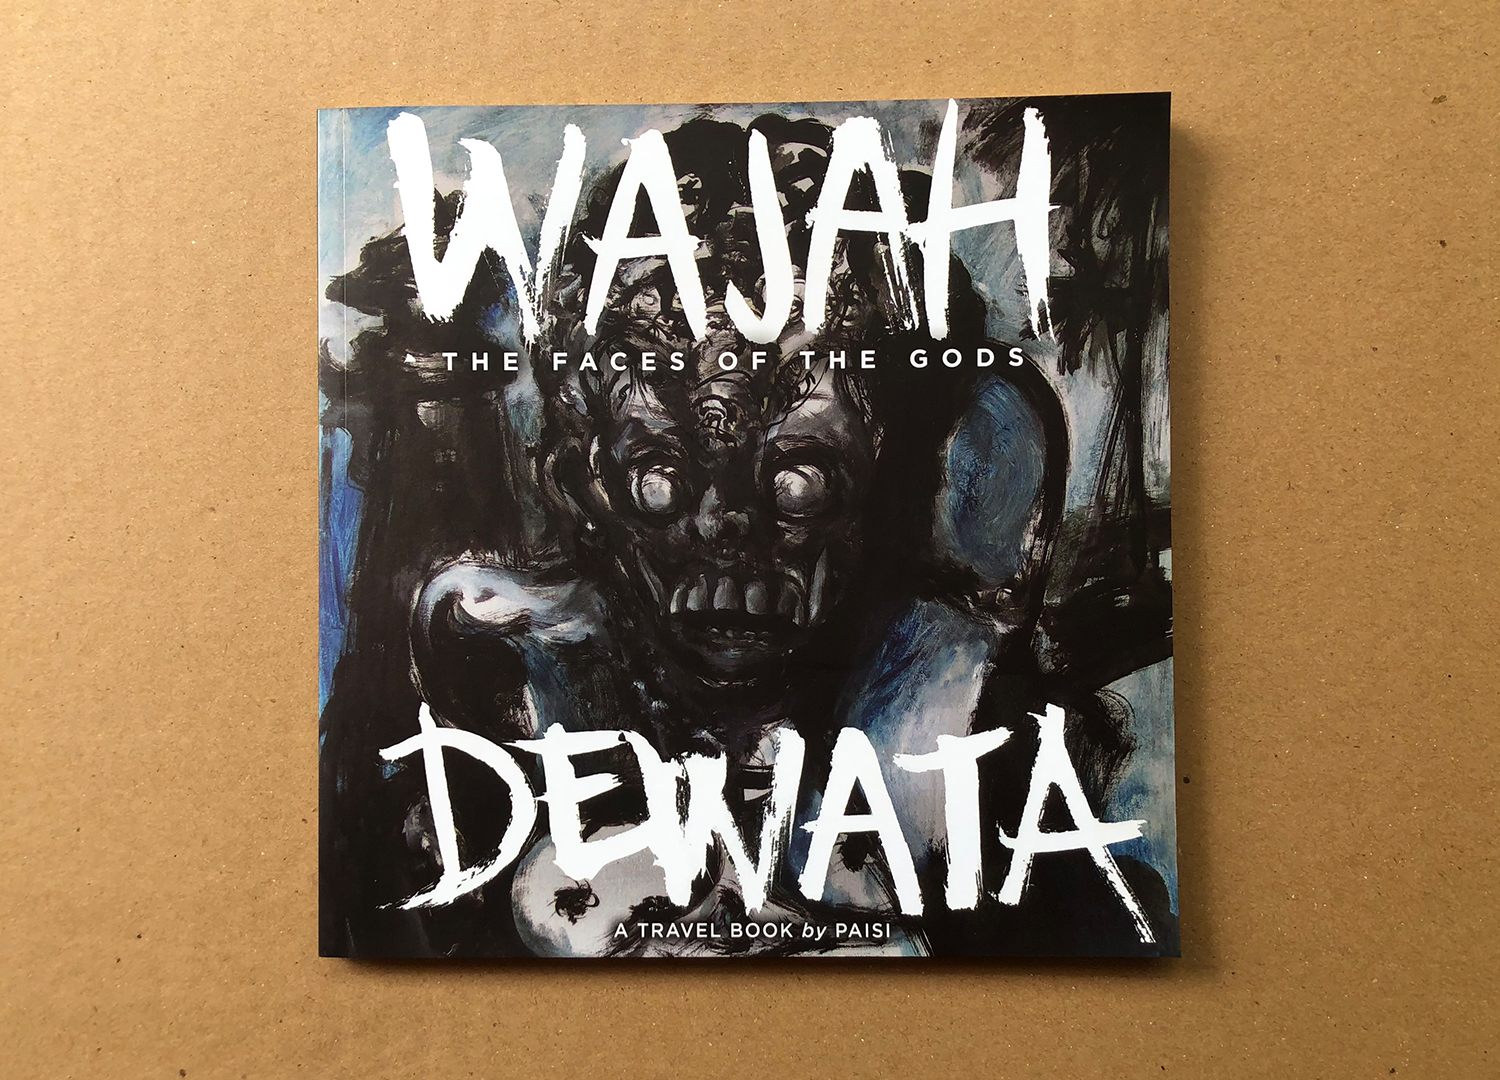 Sekali Bali Publishing - Wajah Dewata